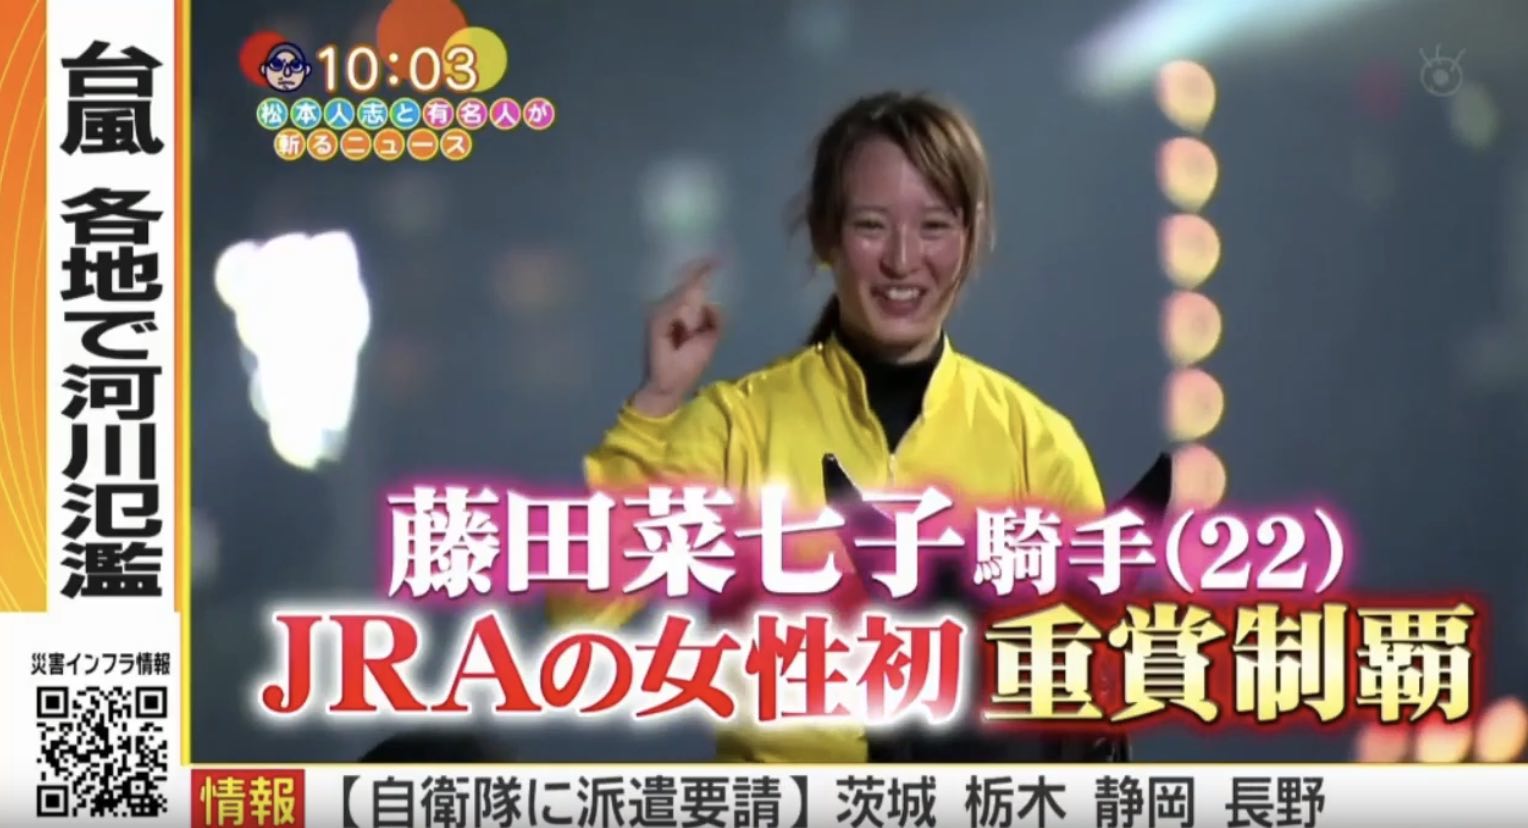 女性騎手でJRA重賞初勝利で喜ぶ藤田菜七子